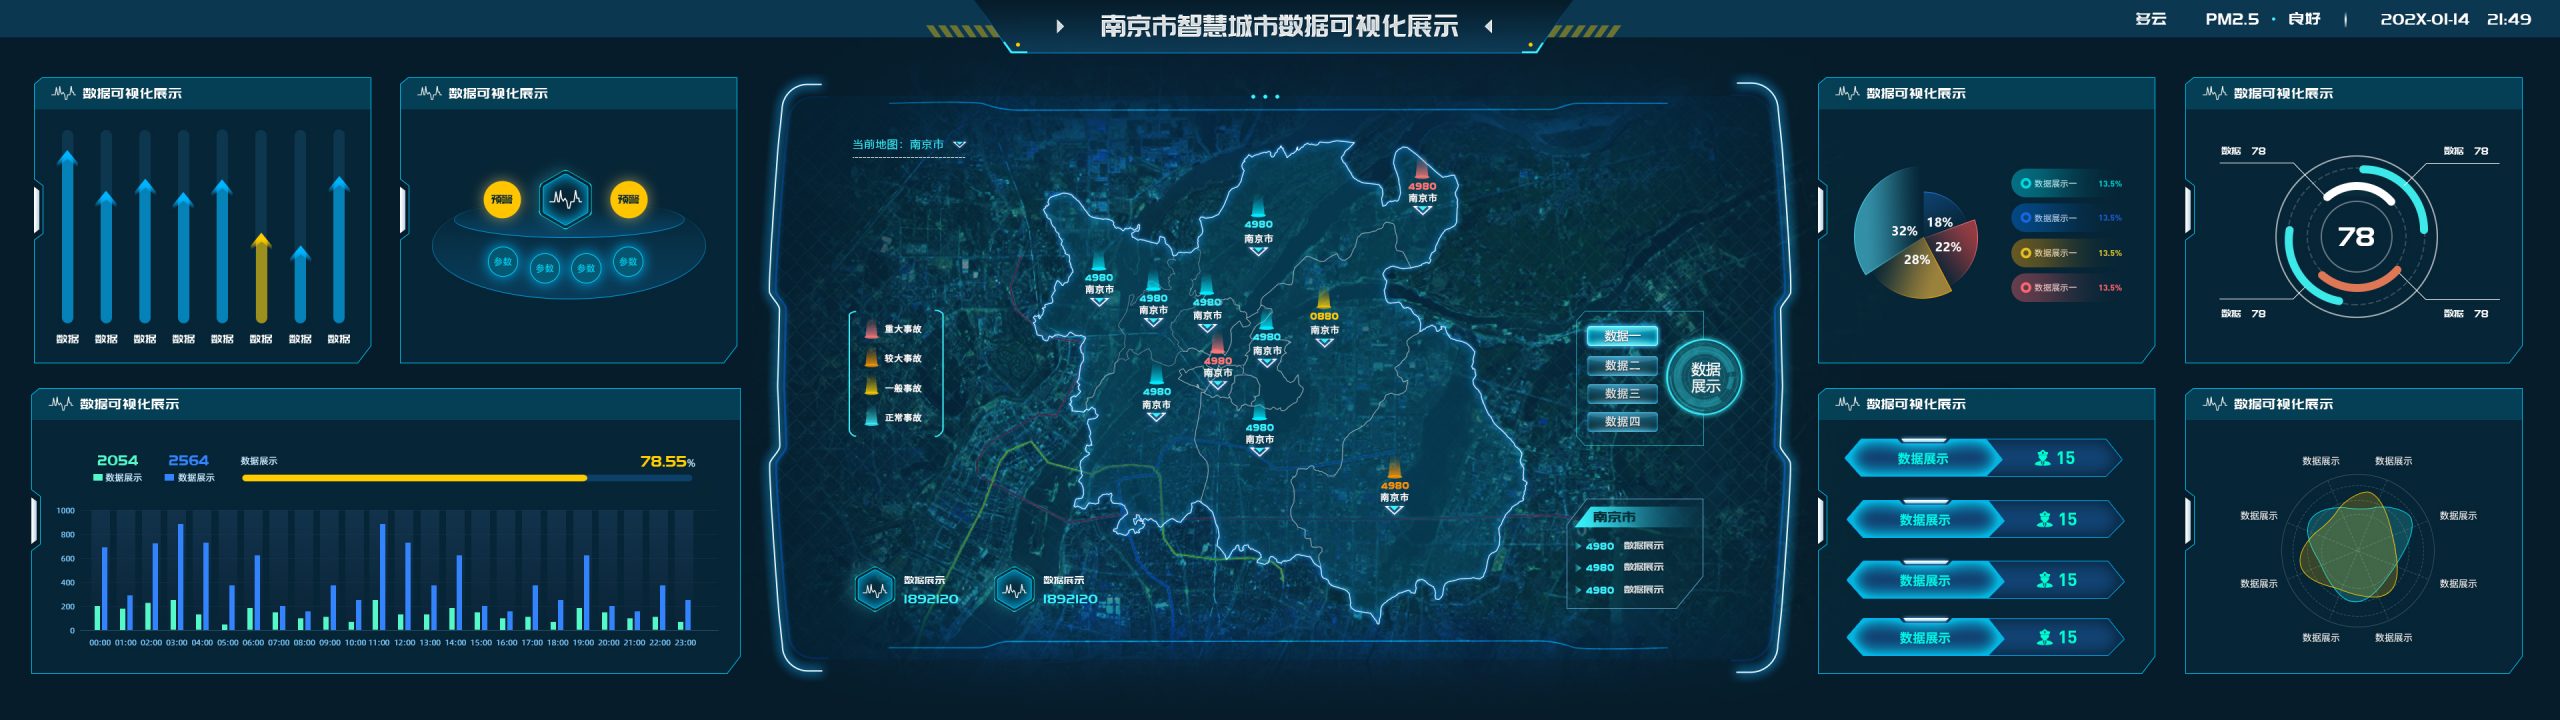 南京市智慧城市数据可视化展示 (http://39.101.138.43:8090/) 参考库 第1张